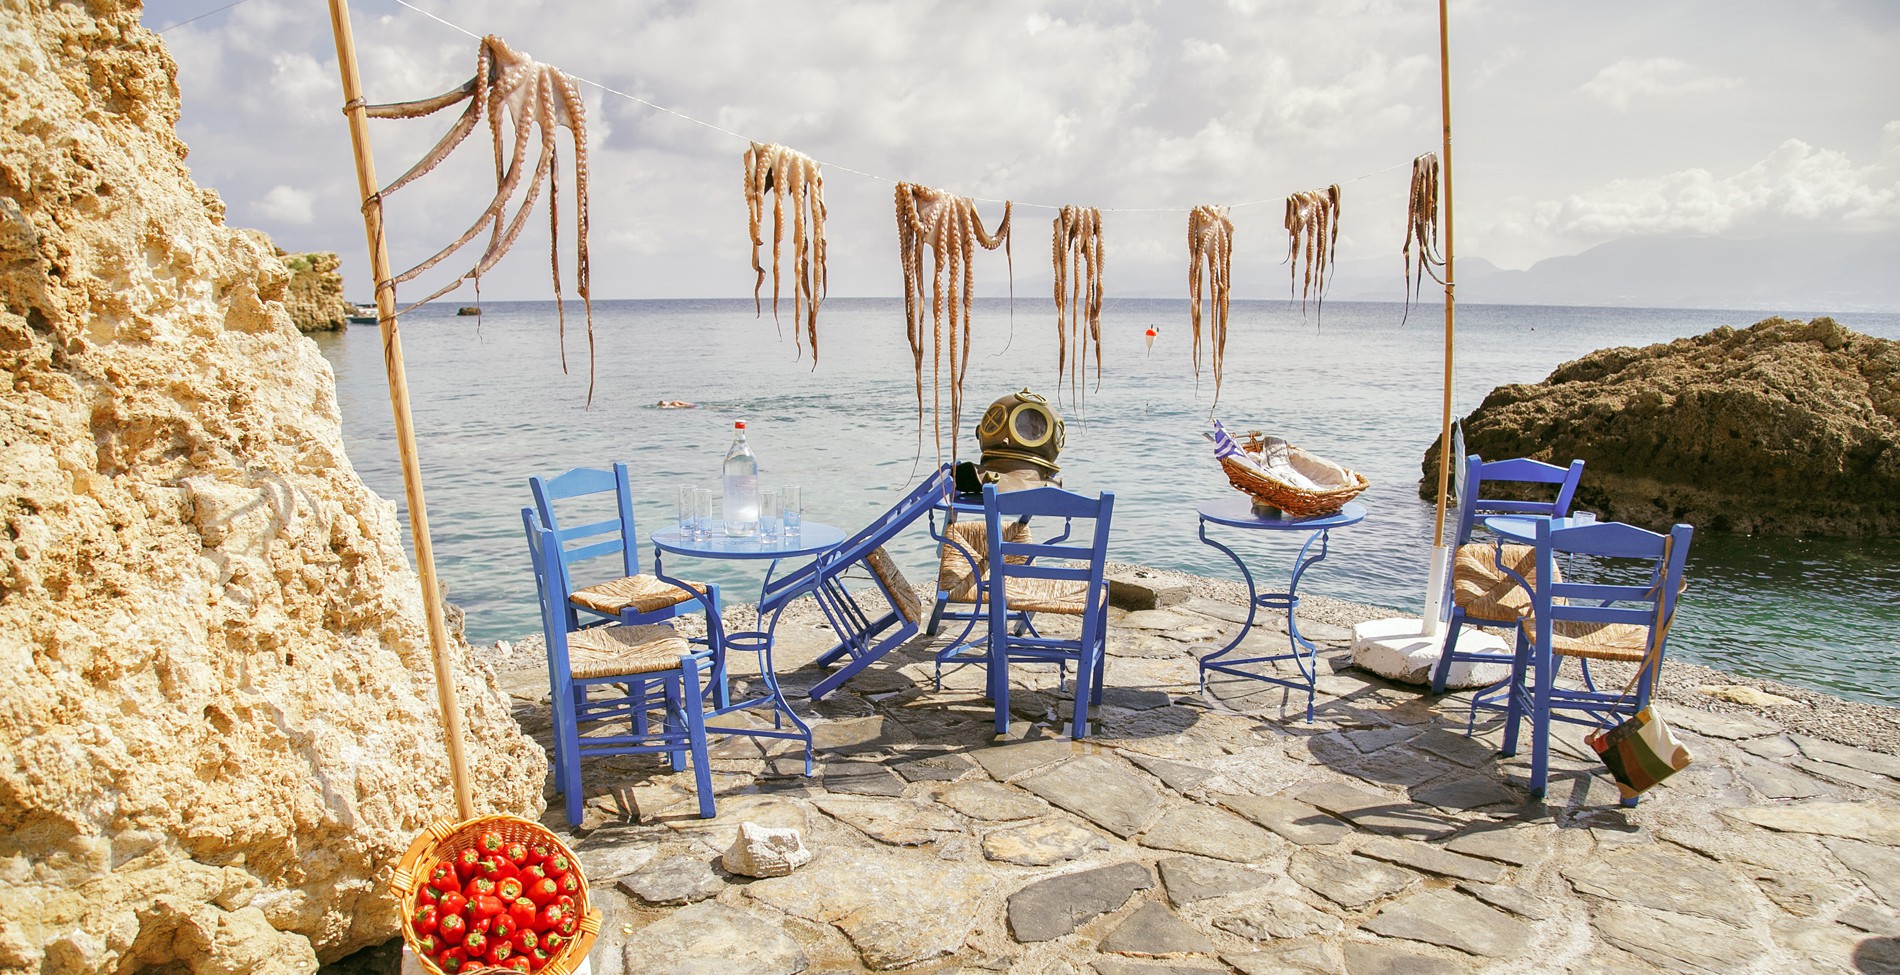 Οι διακοπές σε ένα μικρό ελληνικό νησί που άλλαξαν τη ζωή μιας Βρετανίδας